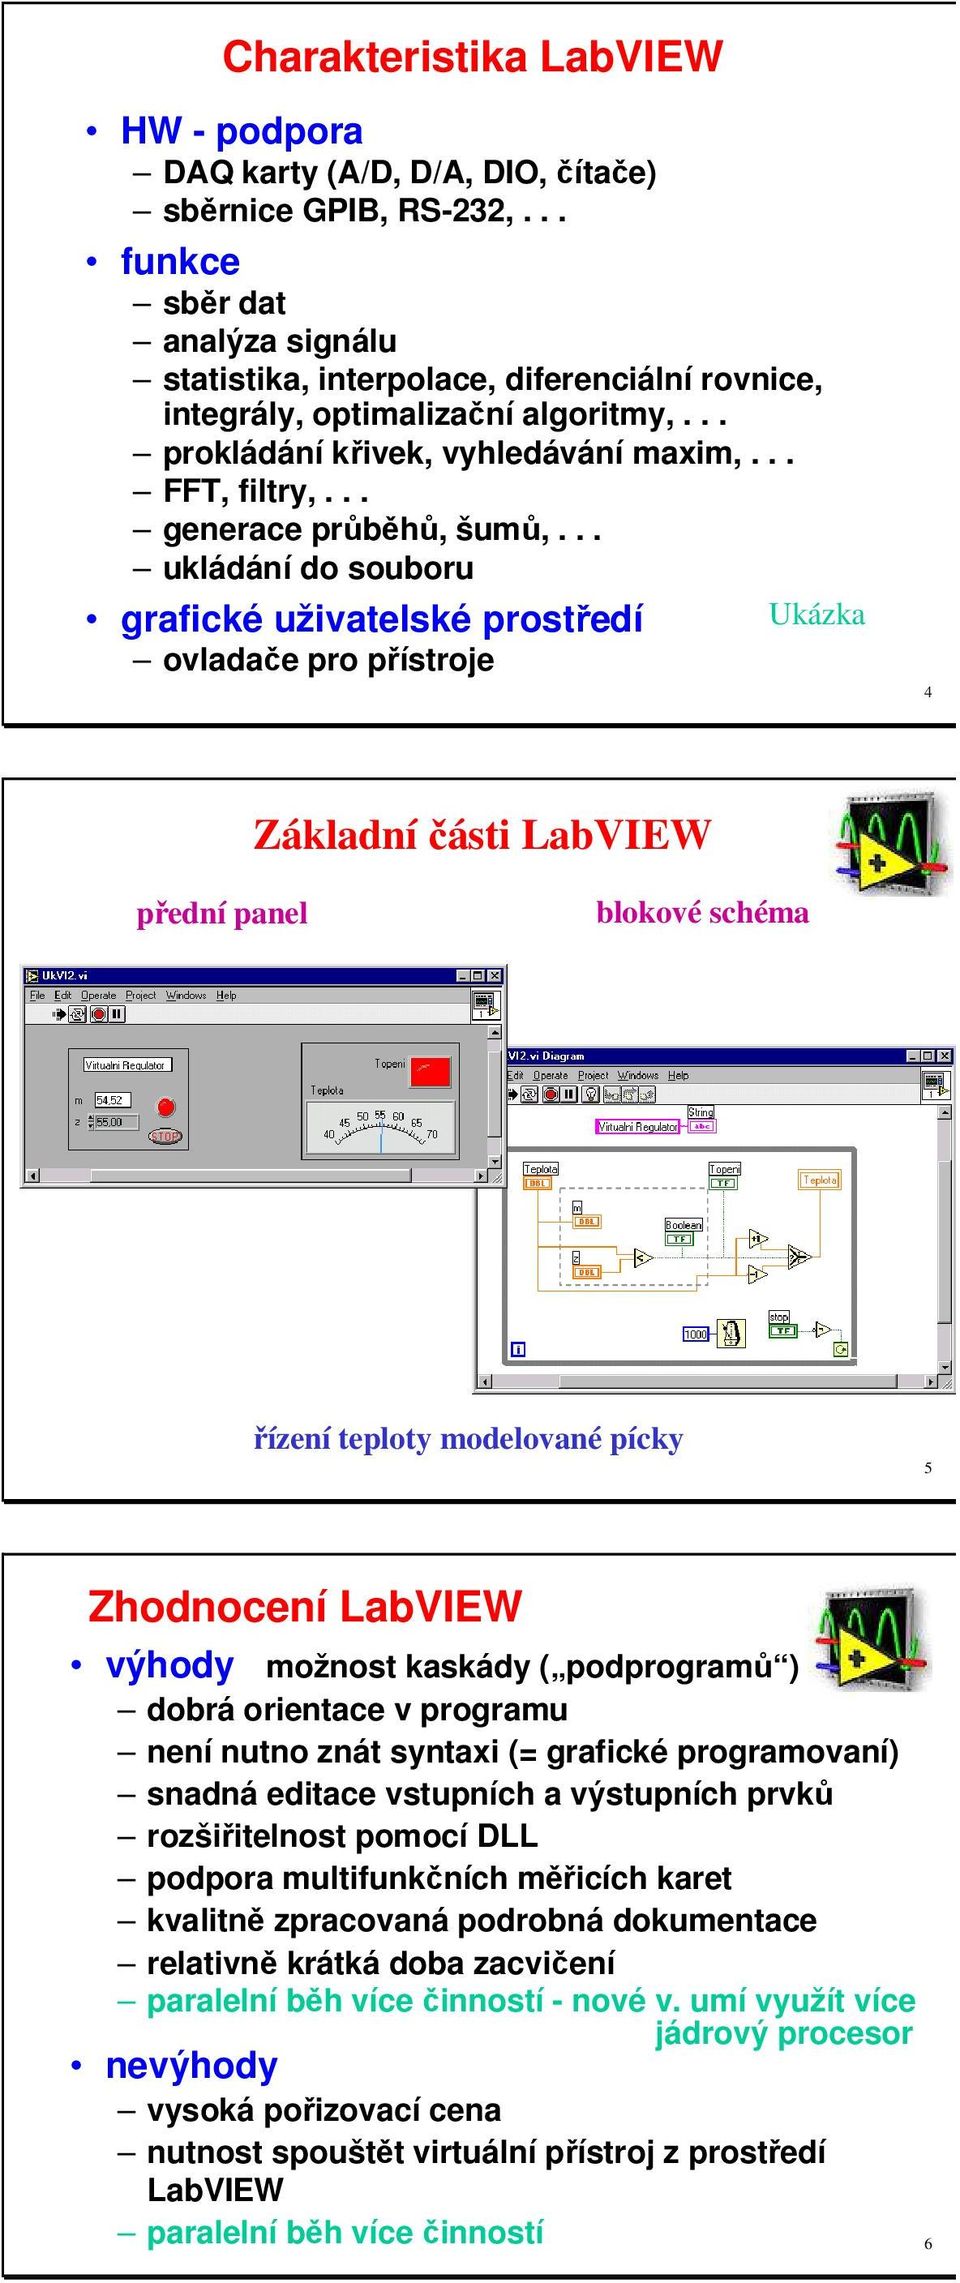 .. ukládání do souboru grafické uživatelské prostředí Ukázka ovladače pro přístroje 4 Základní části LabVIEW přední panel blokové schéma řízení teploty modelované pícky 5 Zhodnocení LabVIEW výhody